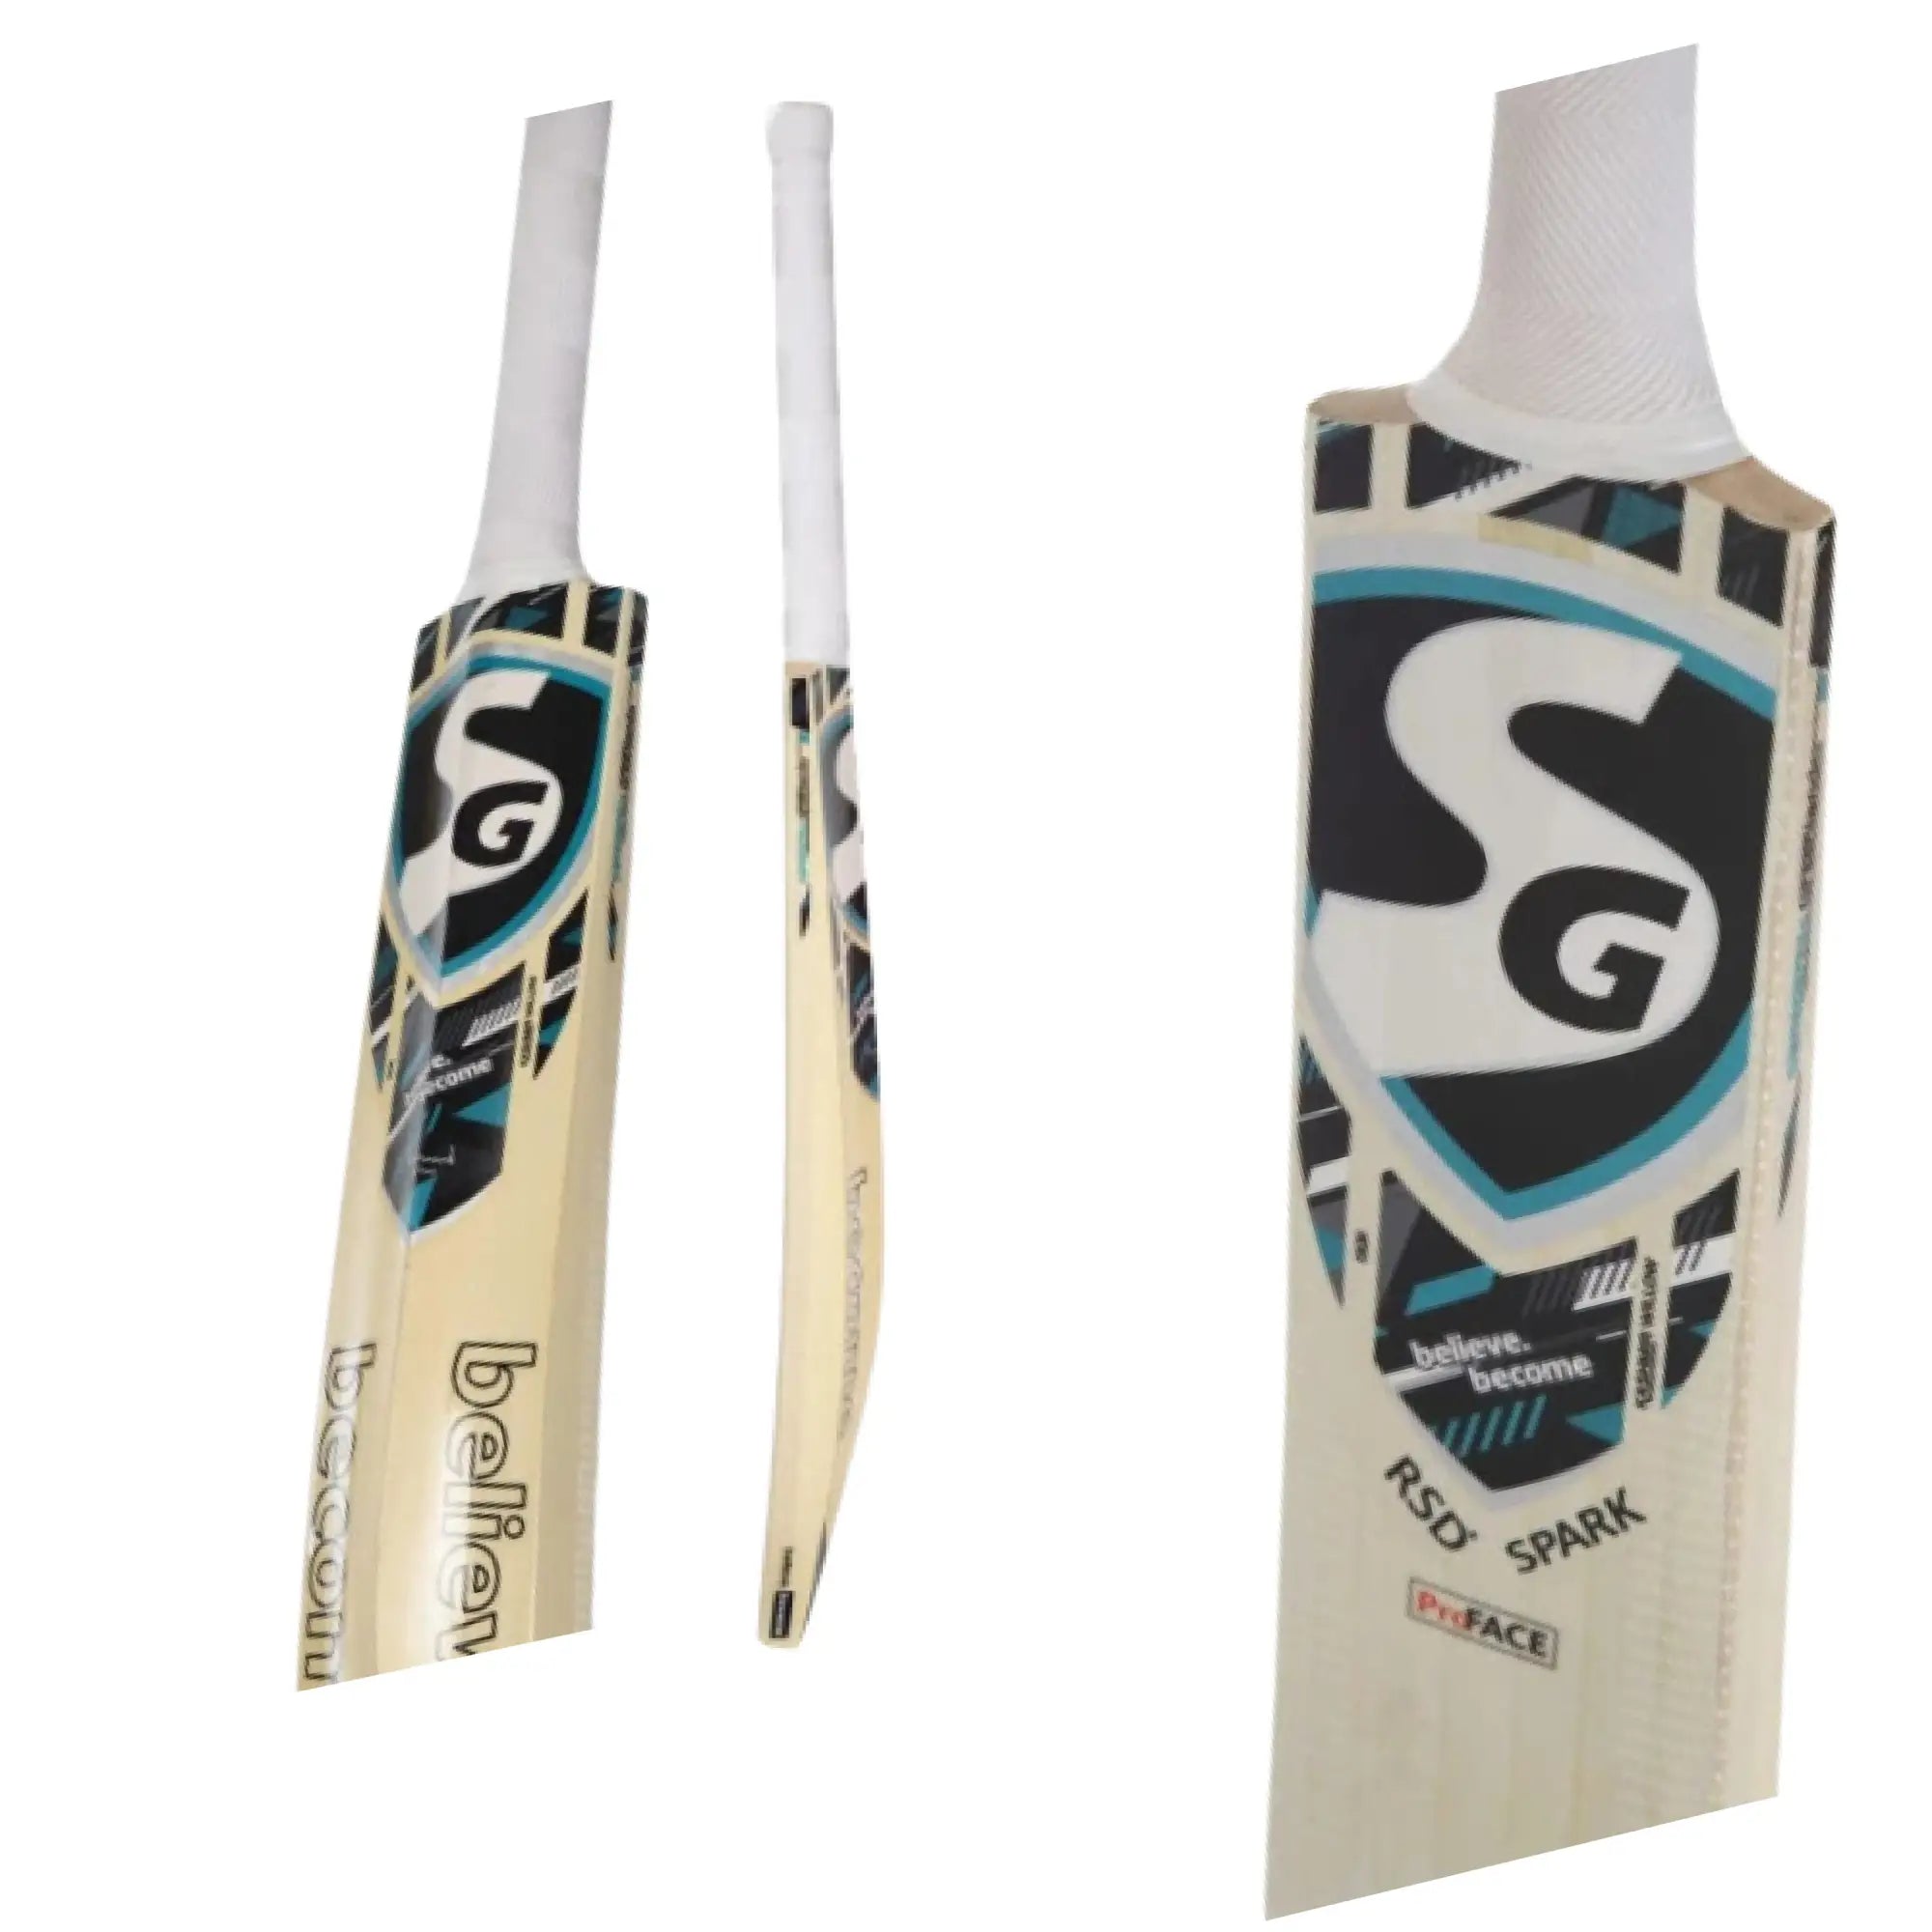 SG RSD Spark Cricket Bats Kashmir